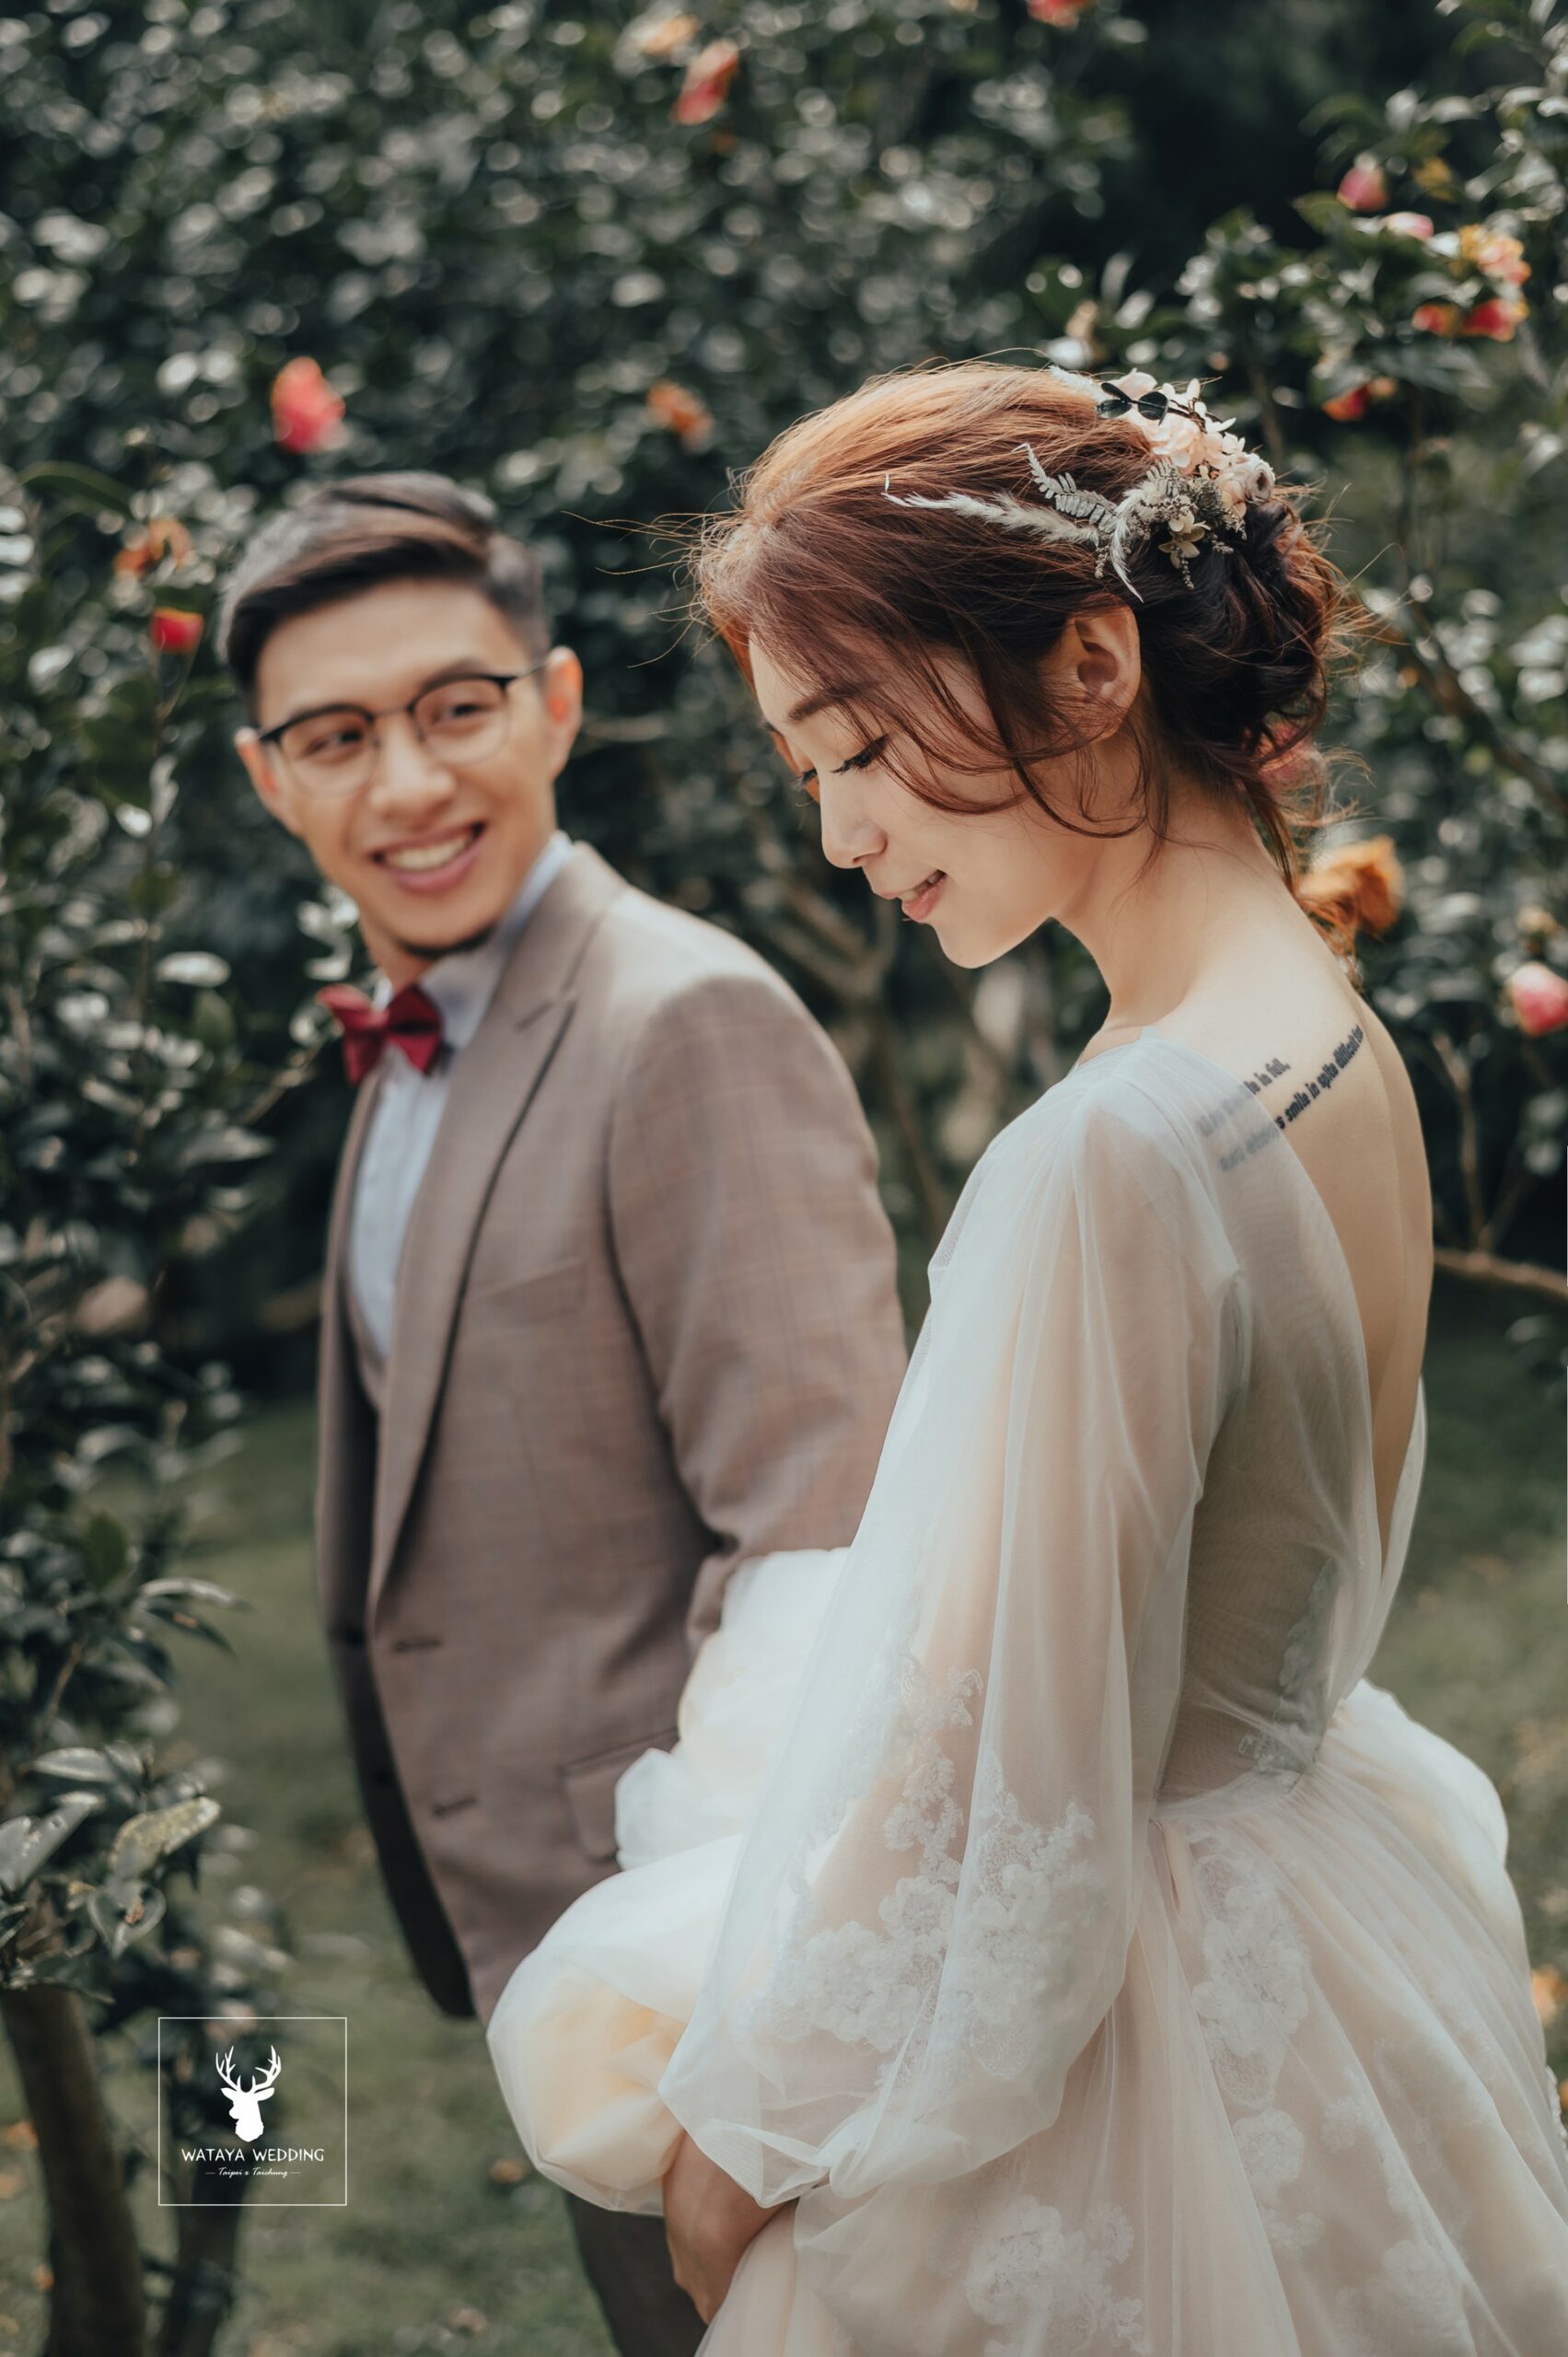 綿谷結婚式-婚紗攝影作品 (1)